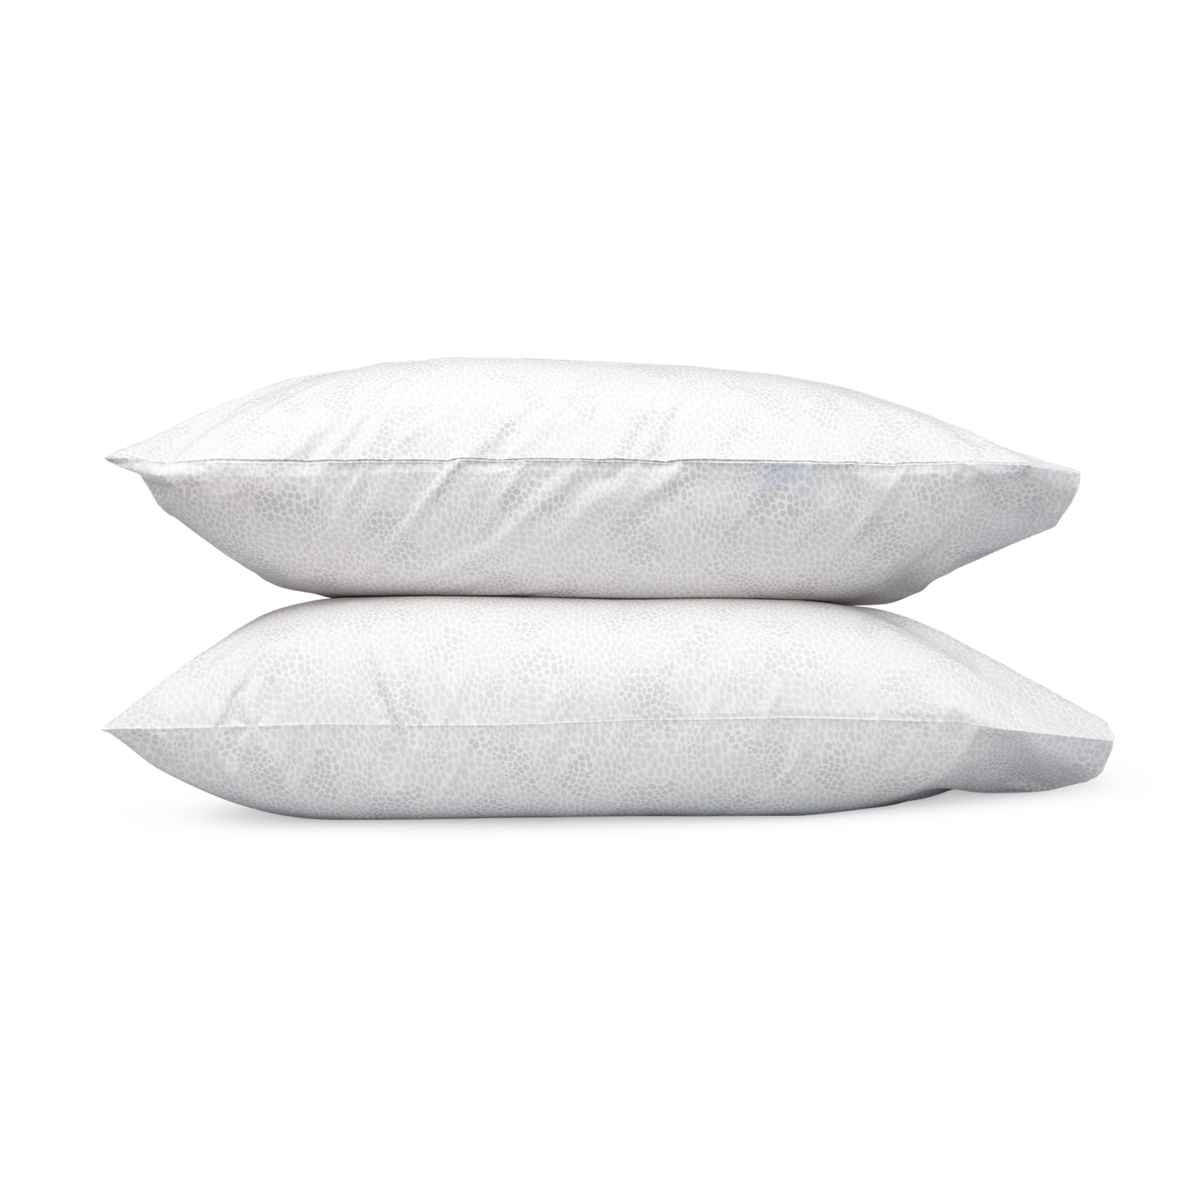 Pair of Pillowcases of Lulu DK Matouk Nikita Bedding in Silver Color